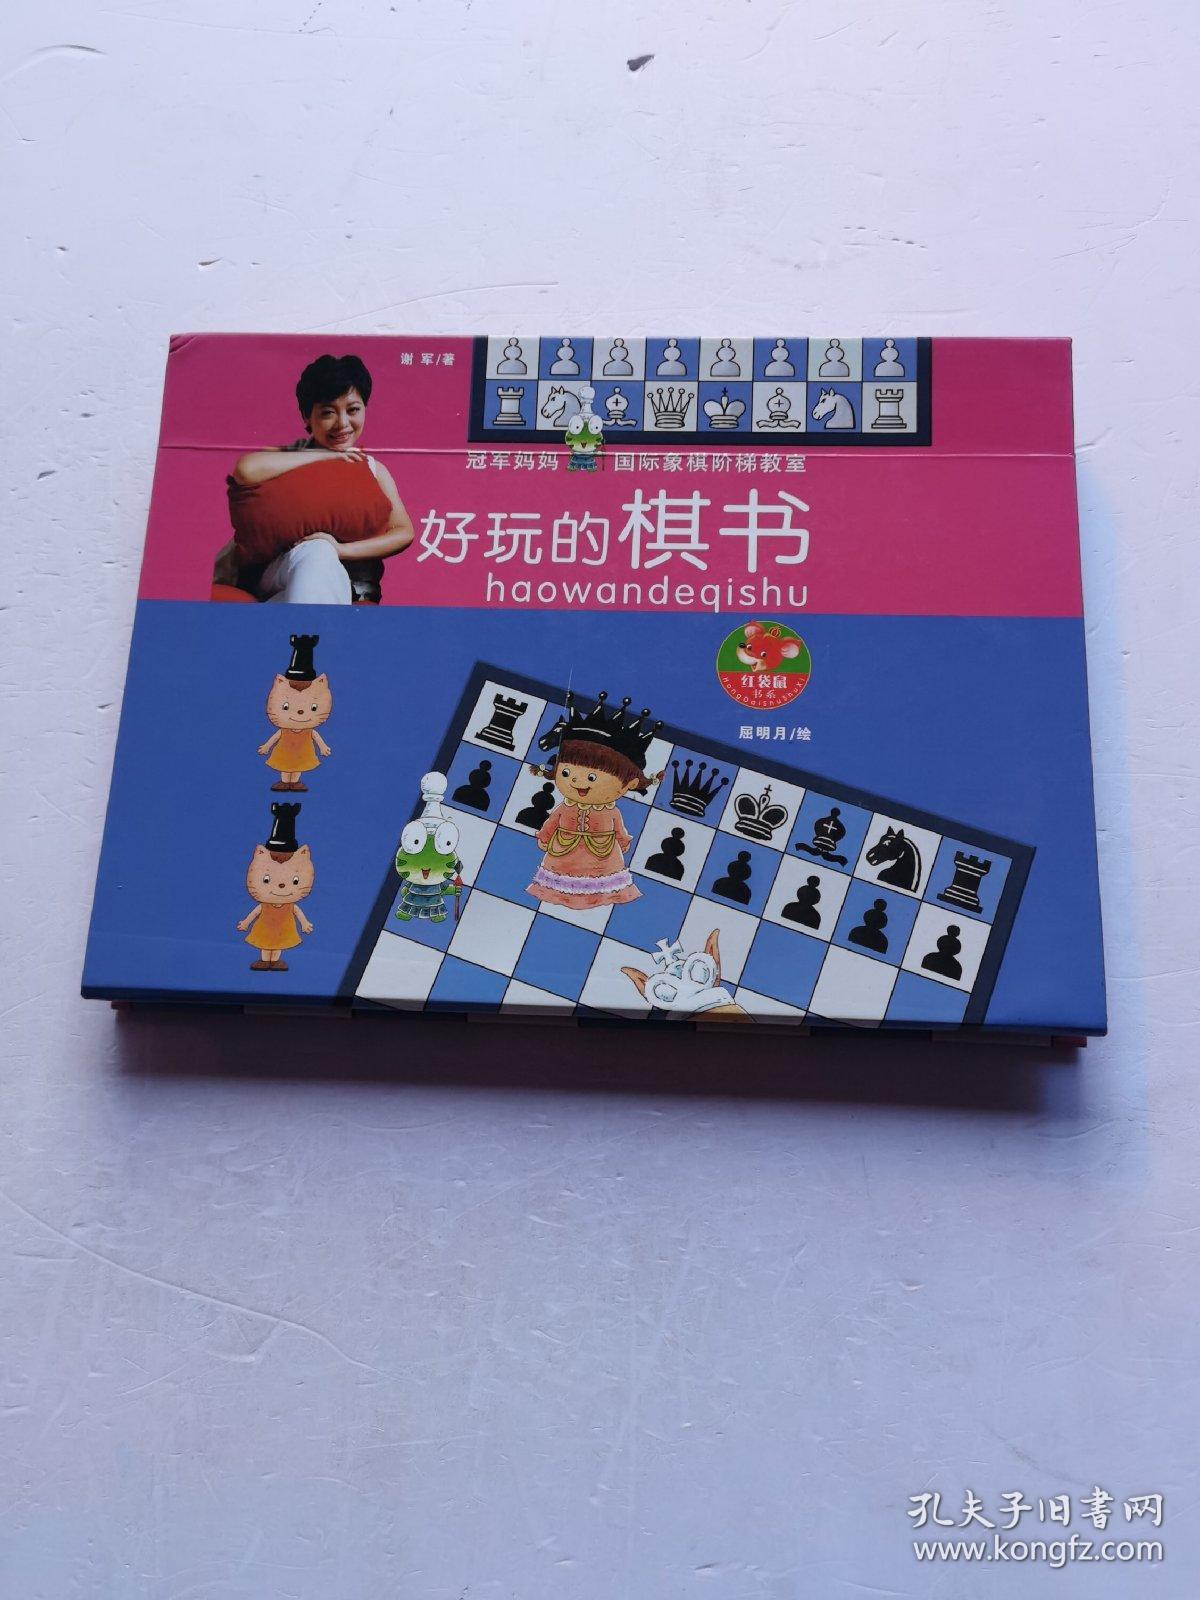 冠军妈妈国际象棋阶梯教室   好玩的棋书